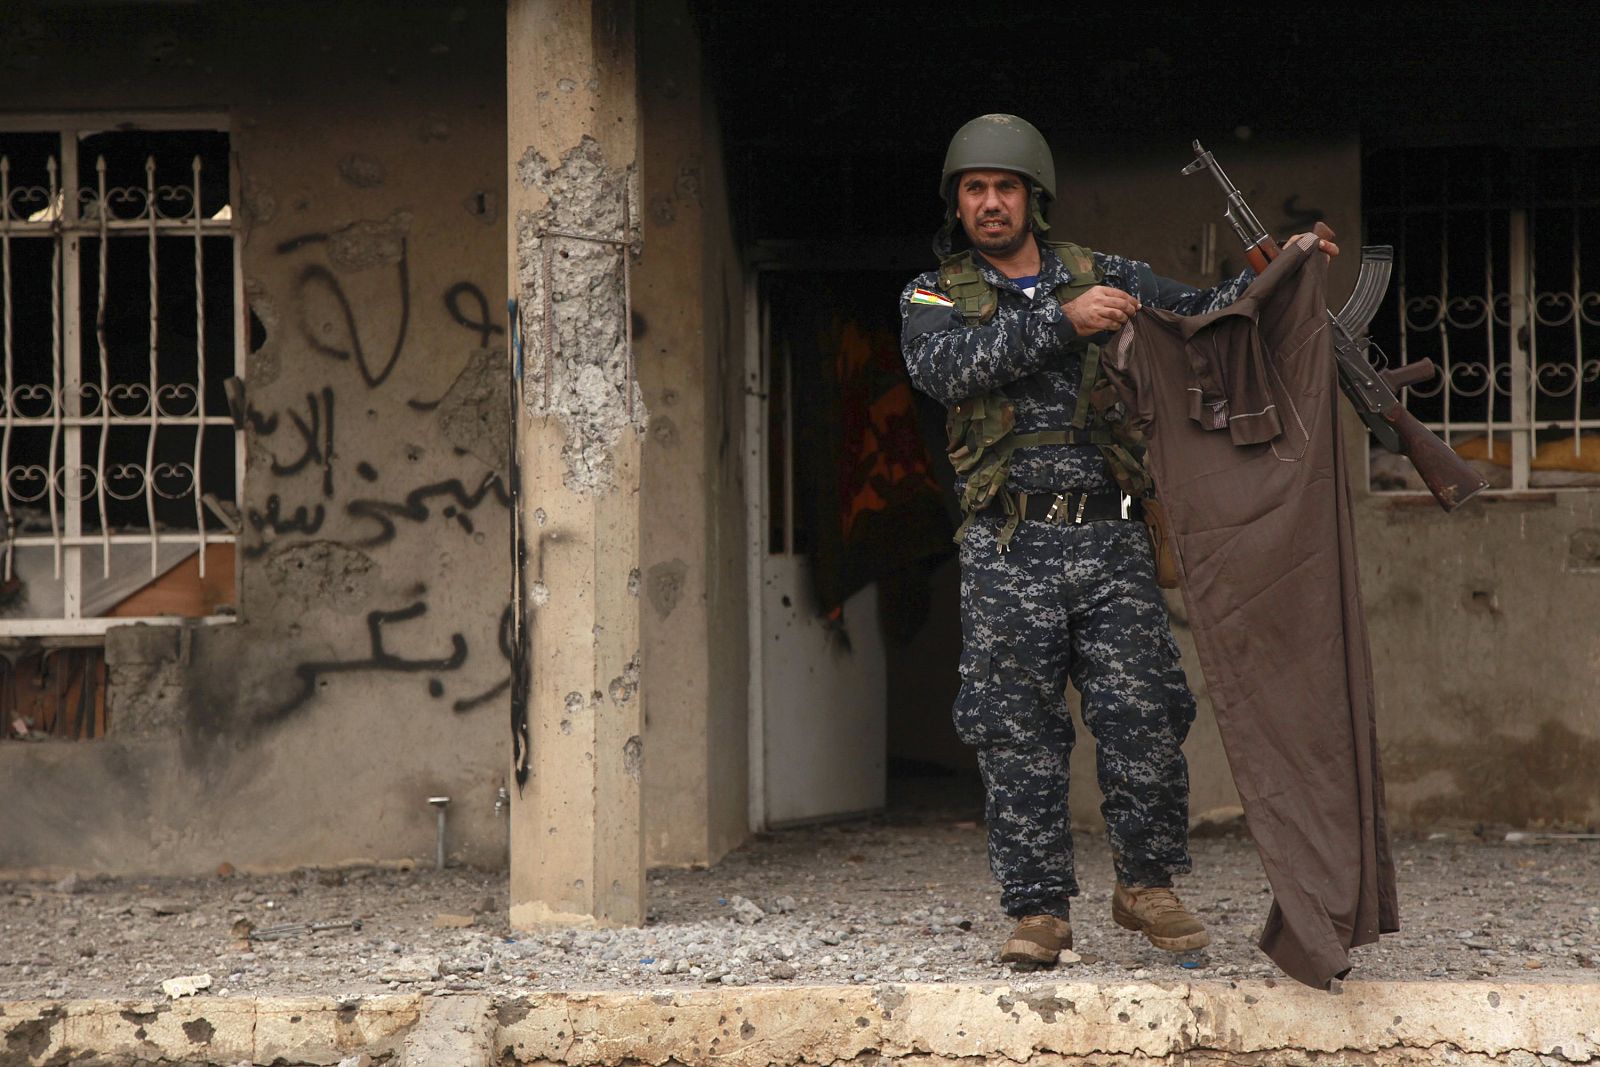 Un kurdo muestra las ropas de un miembro del Estado islámico en Kesarej